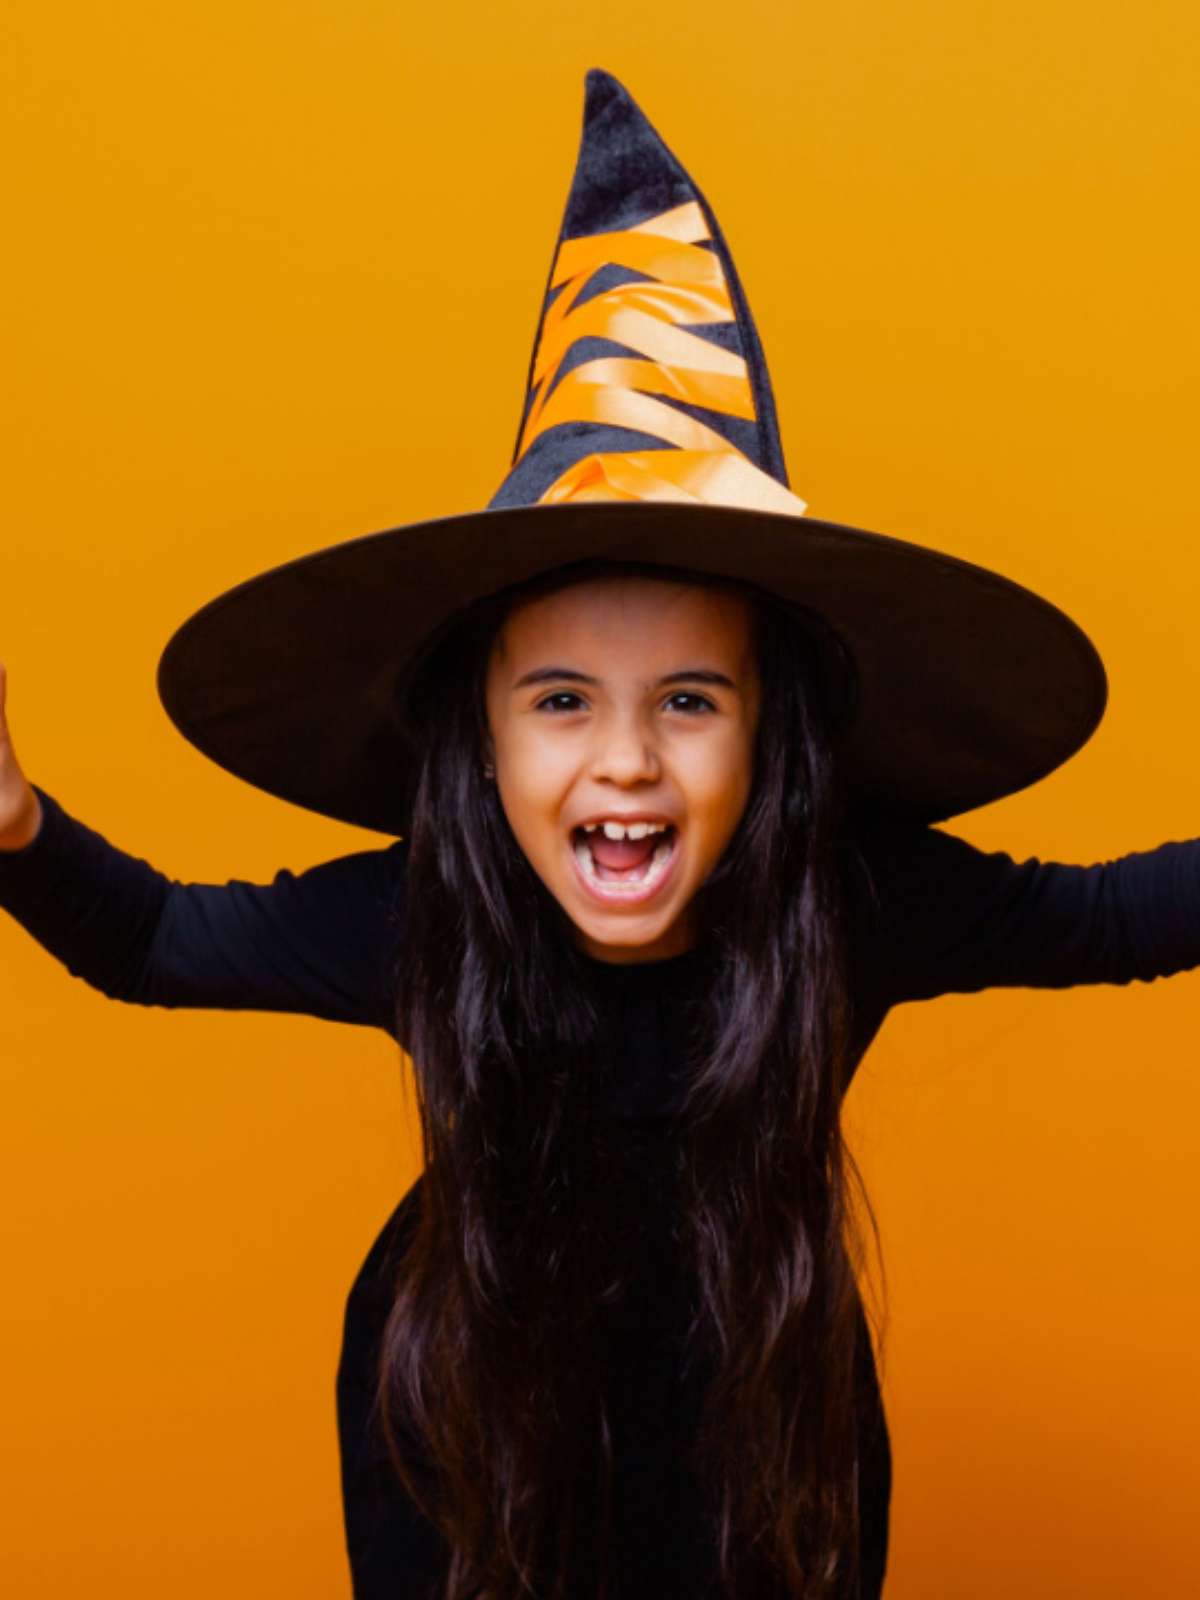 Halloween:descubra formas de aproveitar o 'Dia das Bruxas